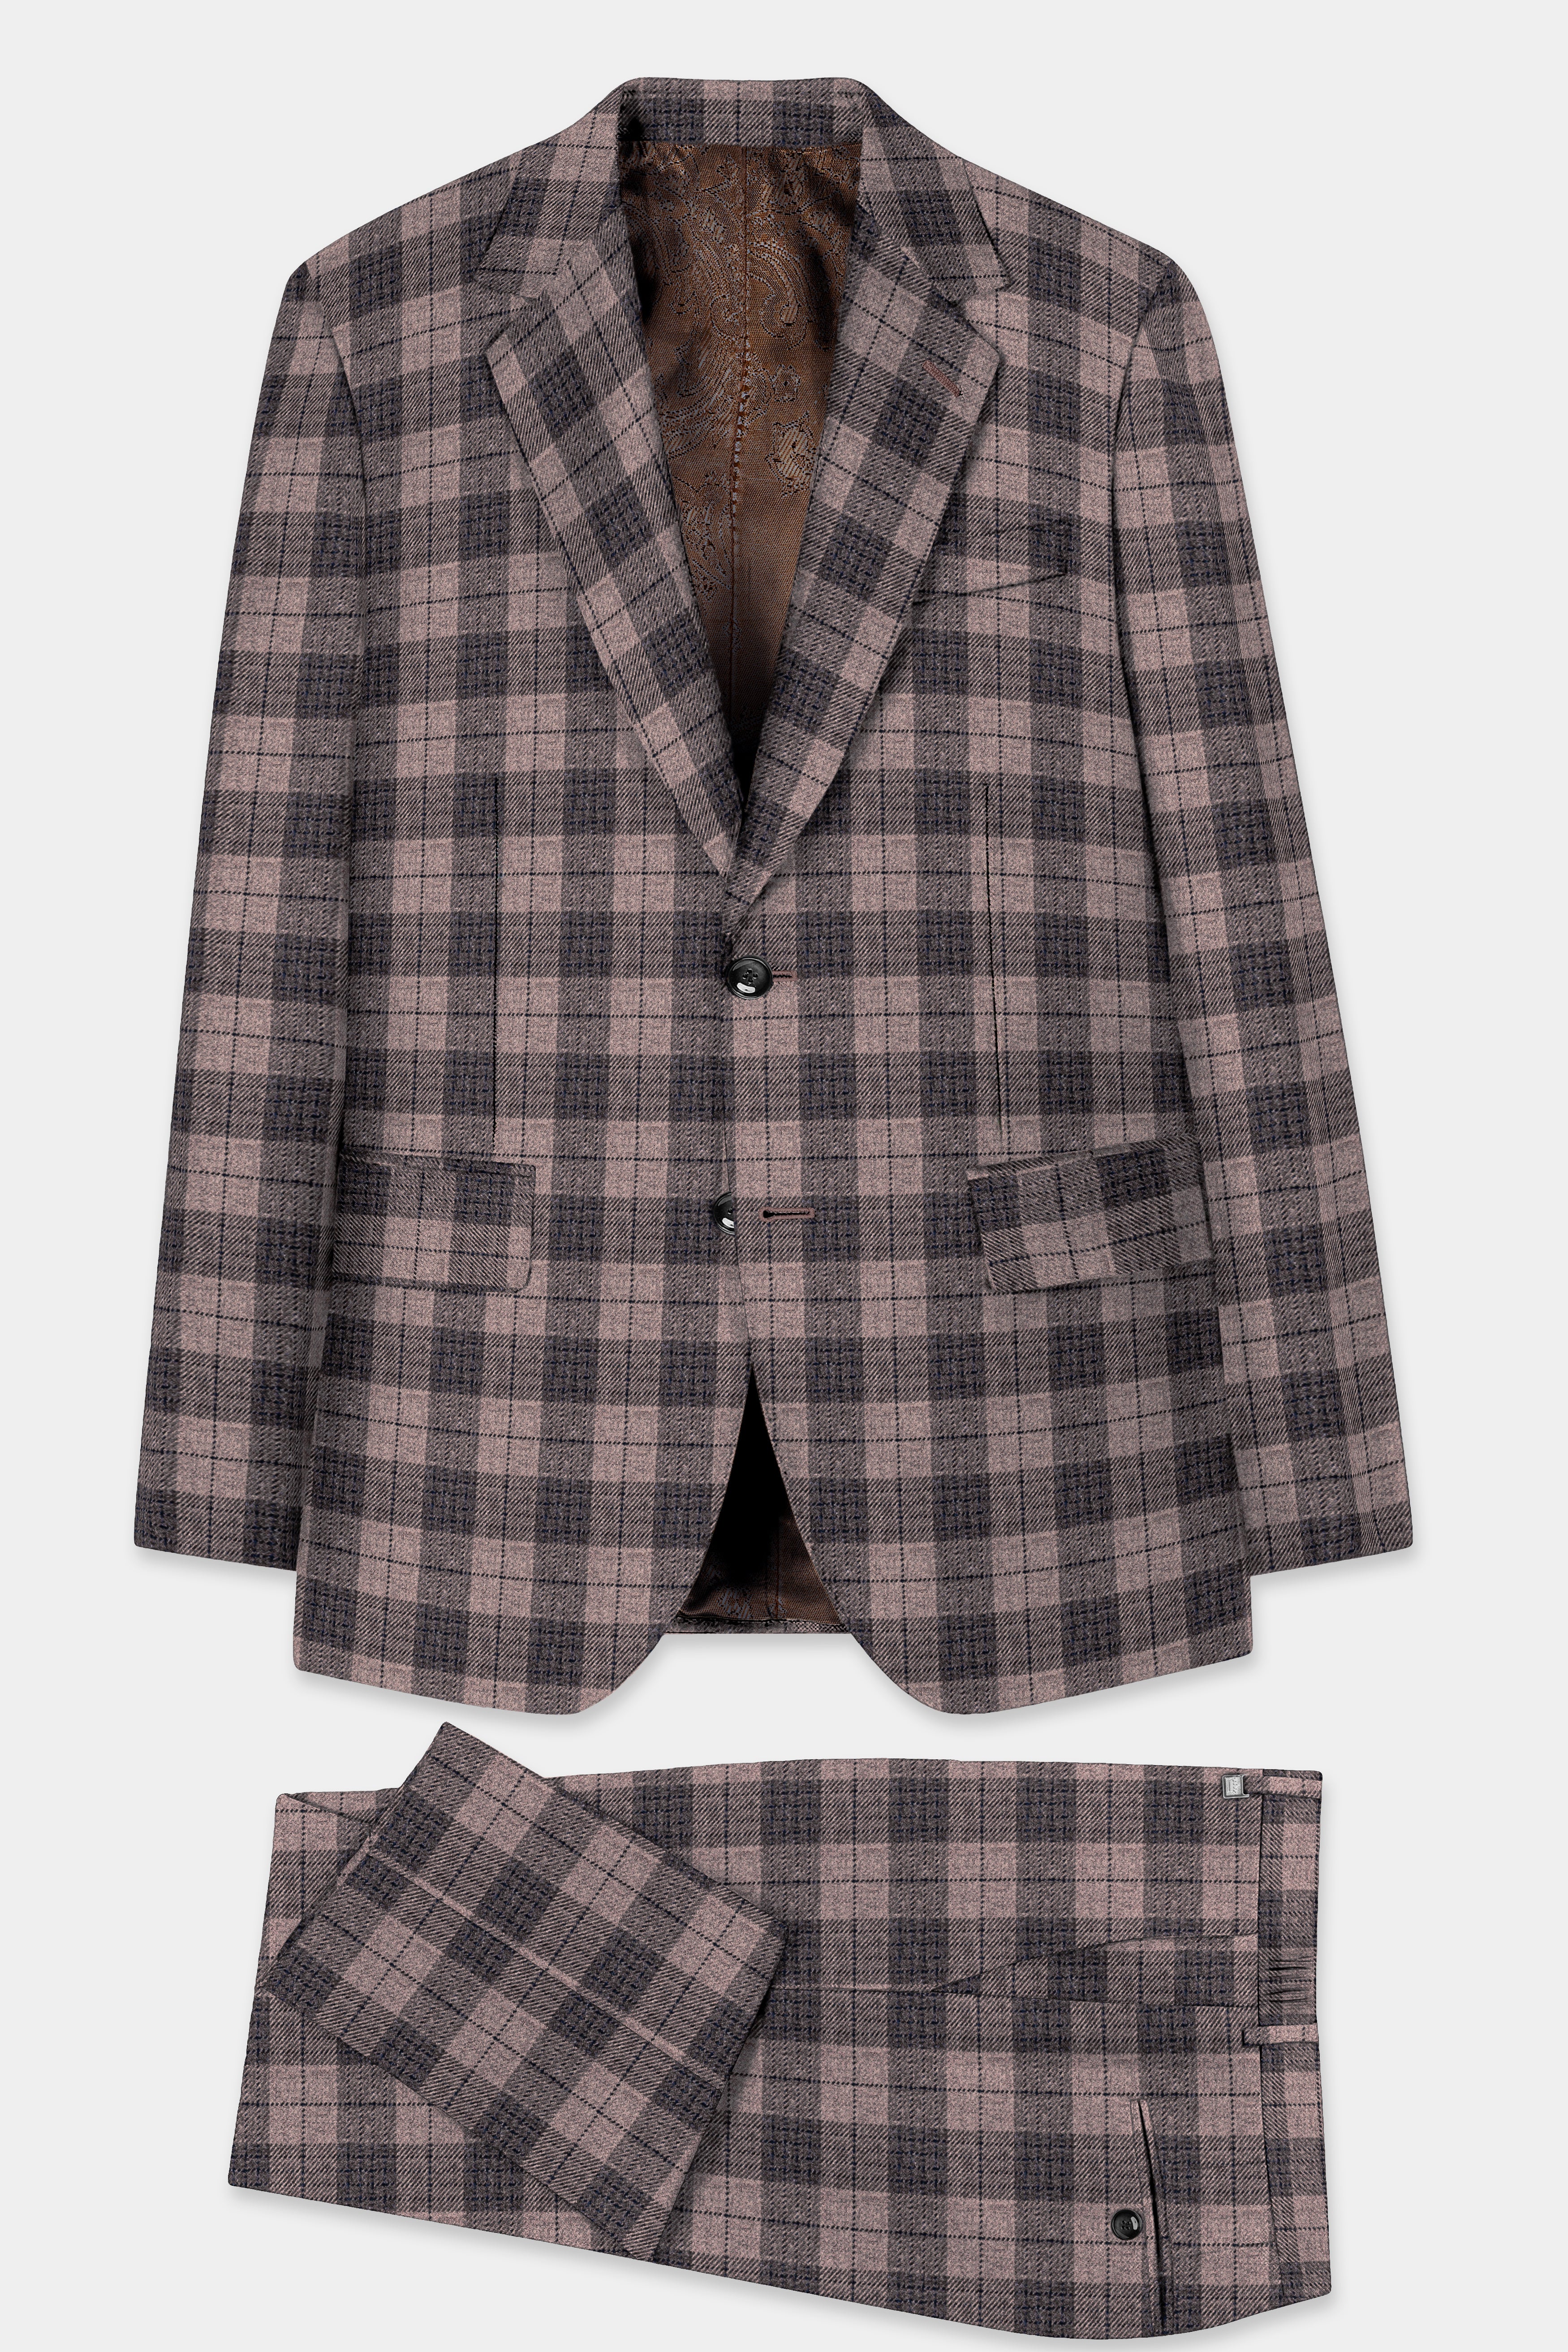 Vampire Brown Checks Plaid Tweed Suit